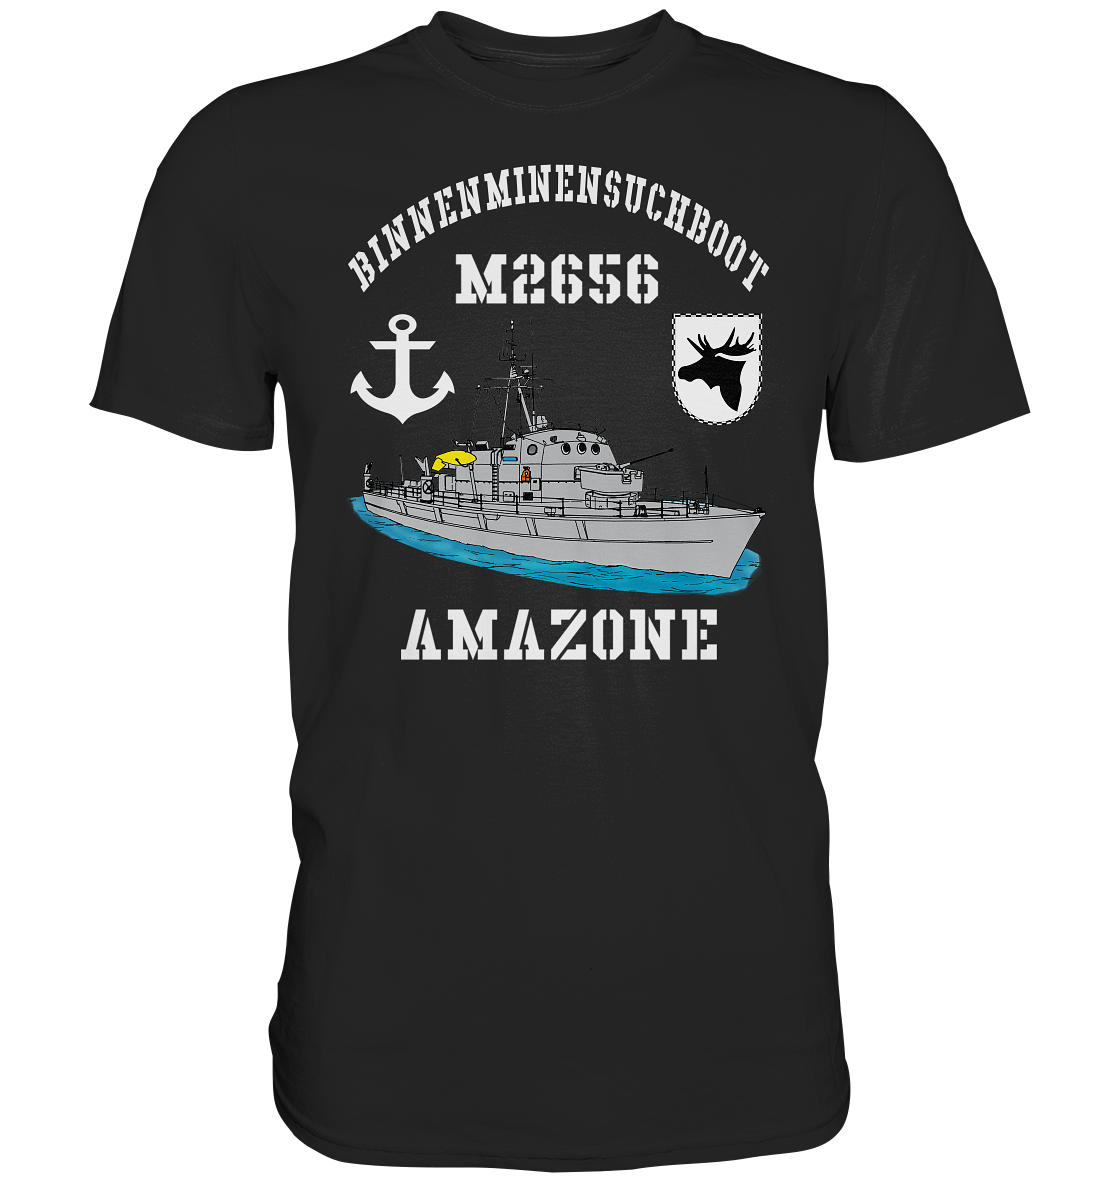 BIMI M2656 AMAZONE 3.MSG Anker - Premium Shirt